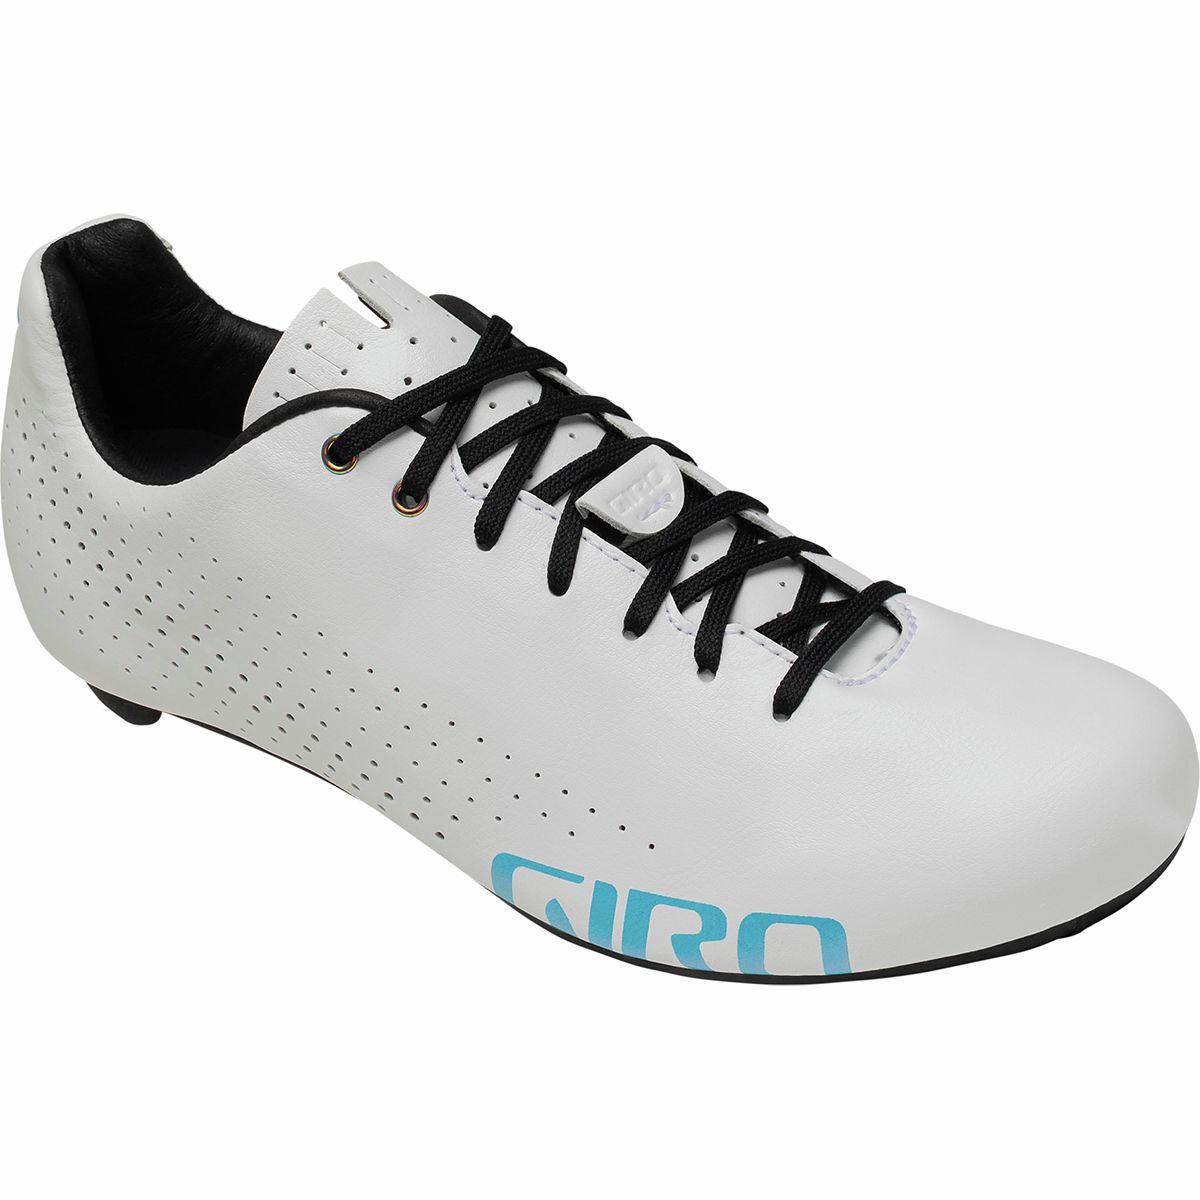 Giro Empire ACC Cycling Shoe - Women's - Women